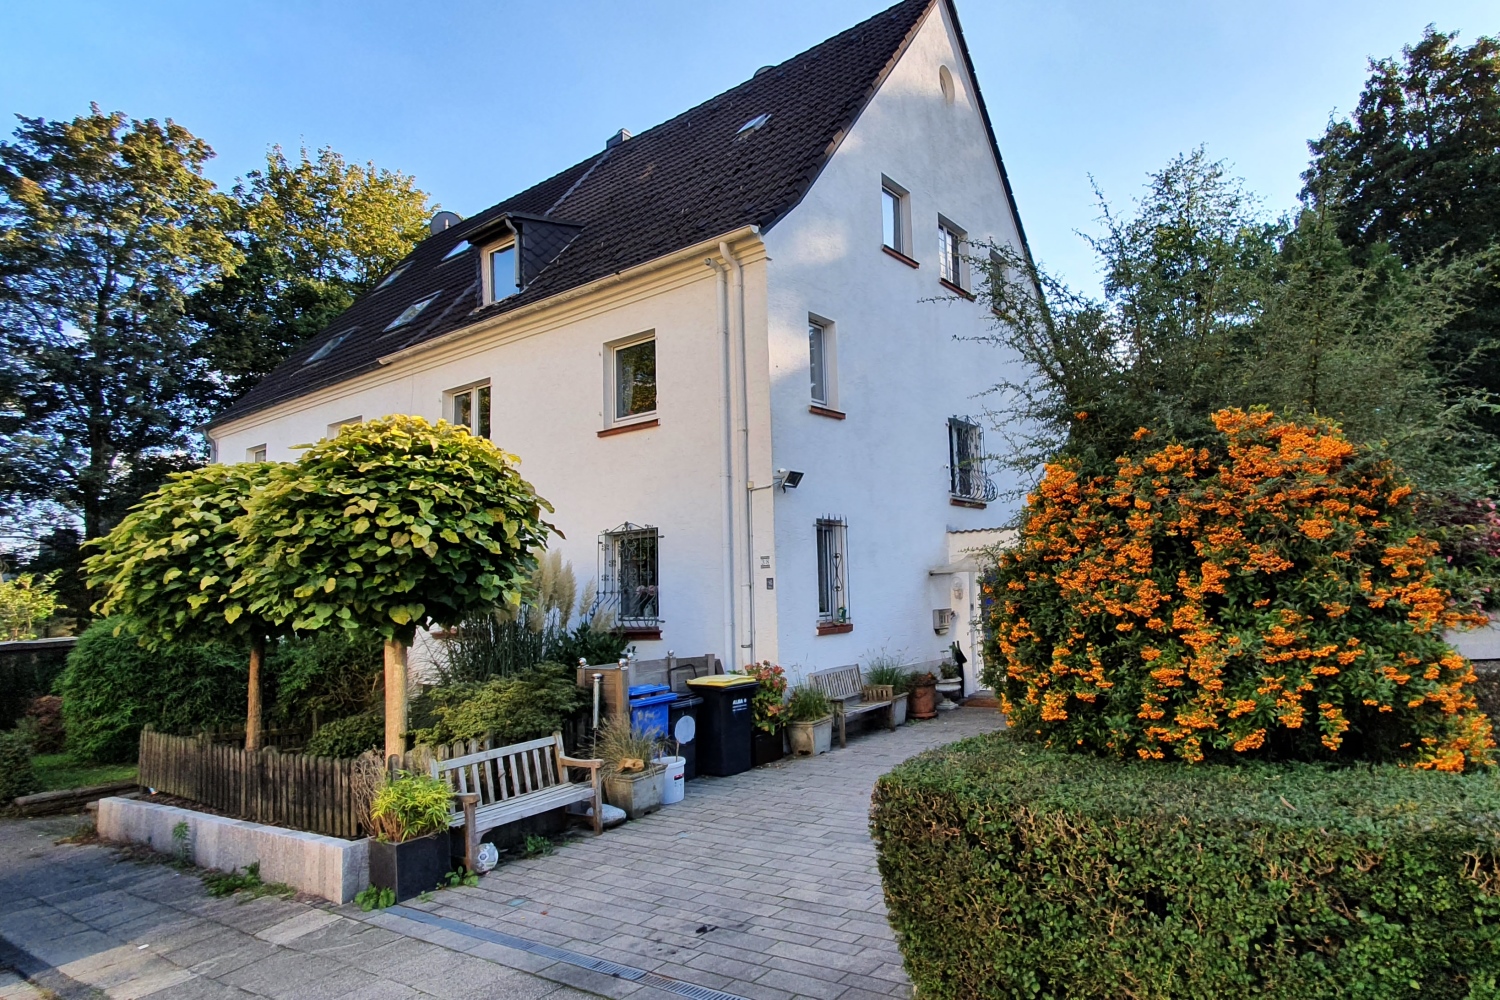 208,58 m² Wohnfläche + Dreifamilienhaus in ruhiger Waldrand-Wohnlage mit sonnigem SW-Grundstück